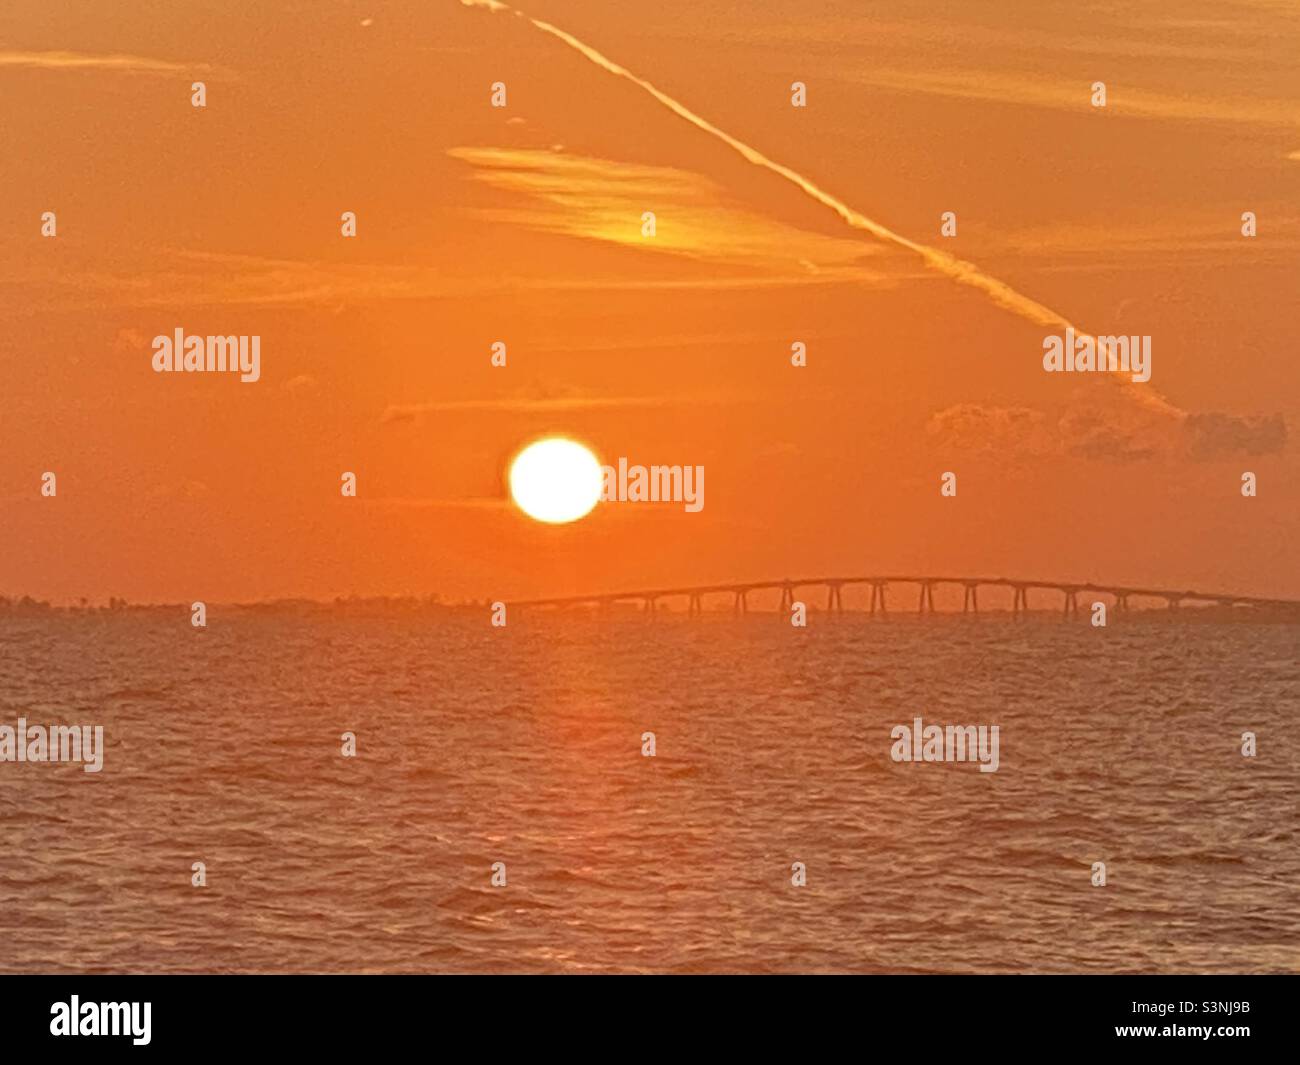 Strahlender orangefarbener Himmel mit der riesigen Sonne, die über eine Brücke und Küste in FT Myers Beach, Florida, untergeht, Blick von einem Boot auf dem Wasser, Silhouette Sonnenuntergang Stockfoto